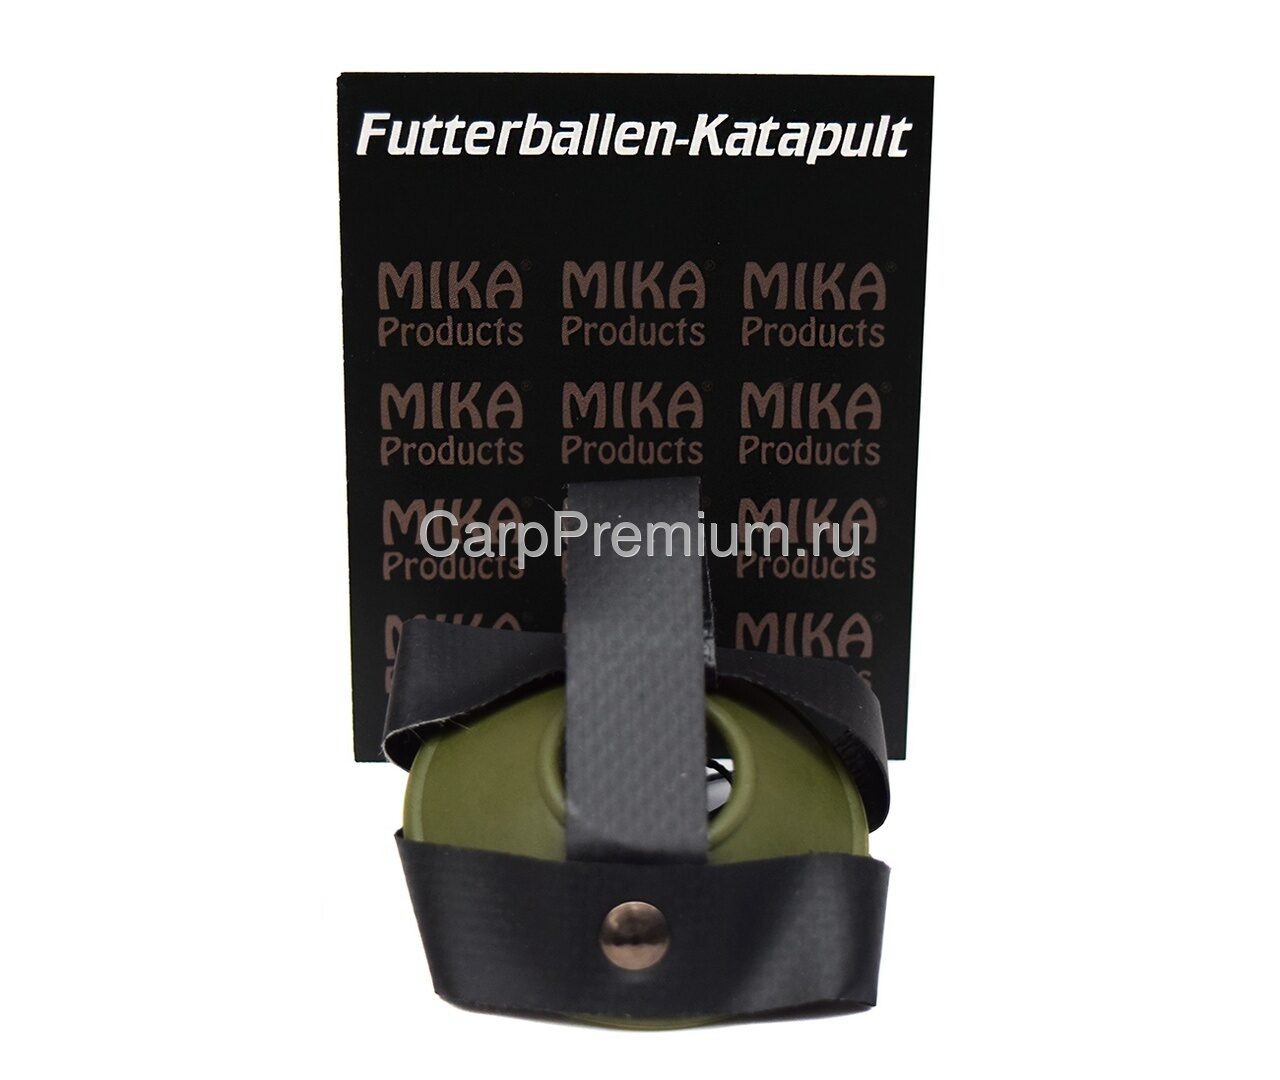 Чашка для заброса прикормочных шаров Mika Products (Мика Продукт) - MP Futterballen-Katapult